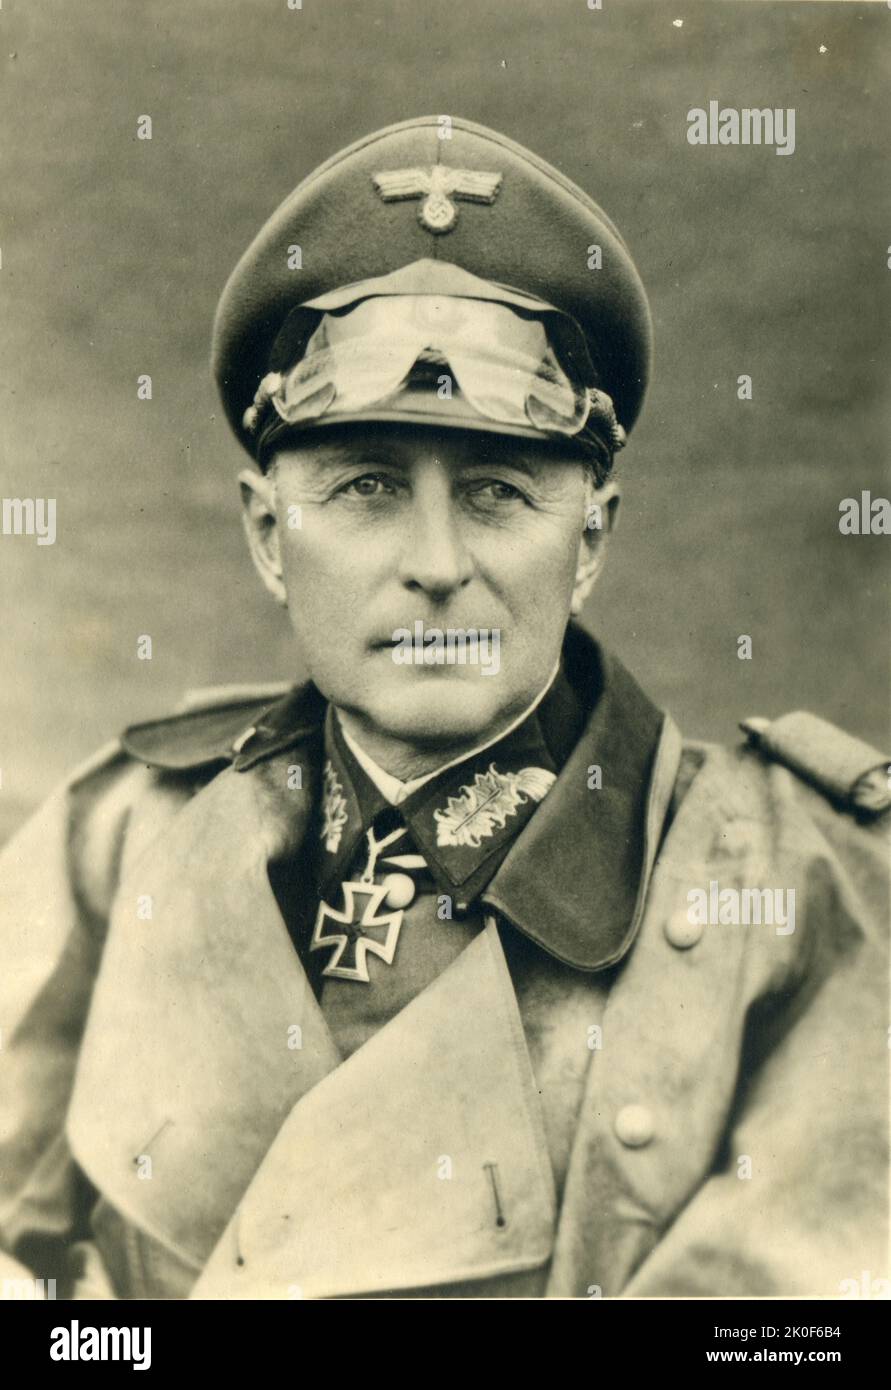 WW2 german General der Panzertruppe Leo Freiherr Geyr von Schweppenburg east front- iron cross - germany, nazism Stock Photo